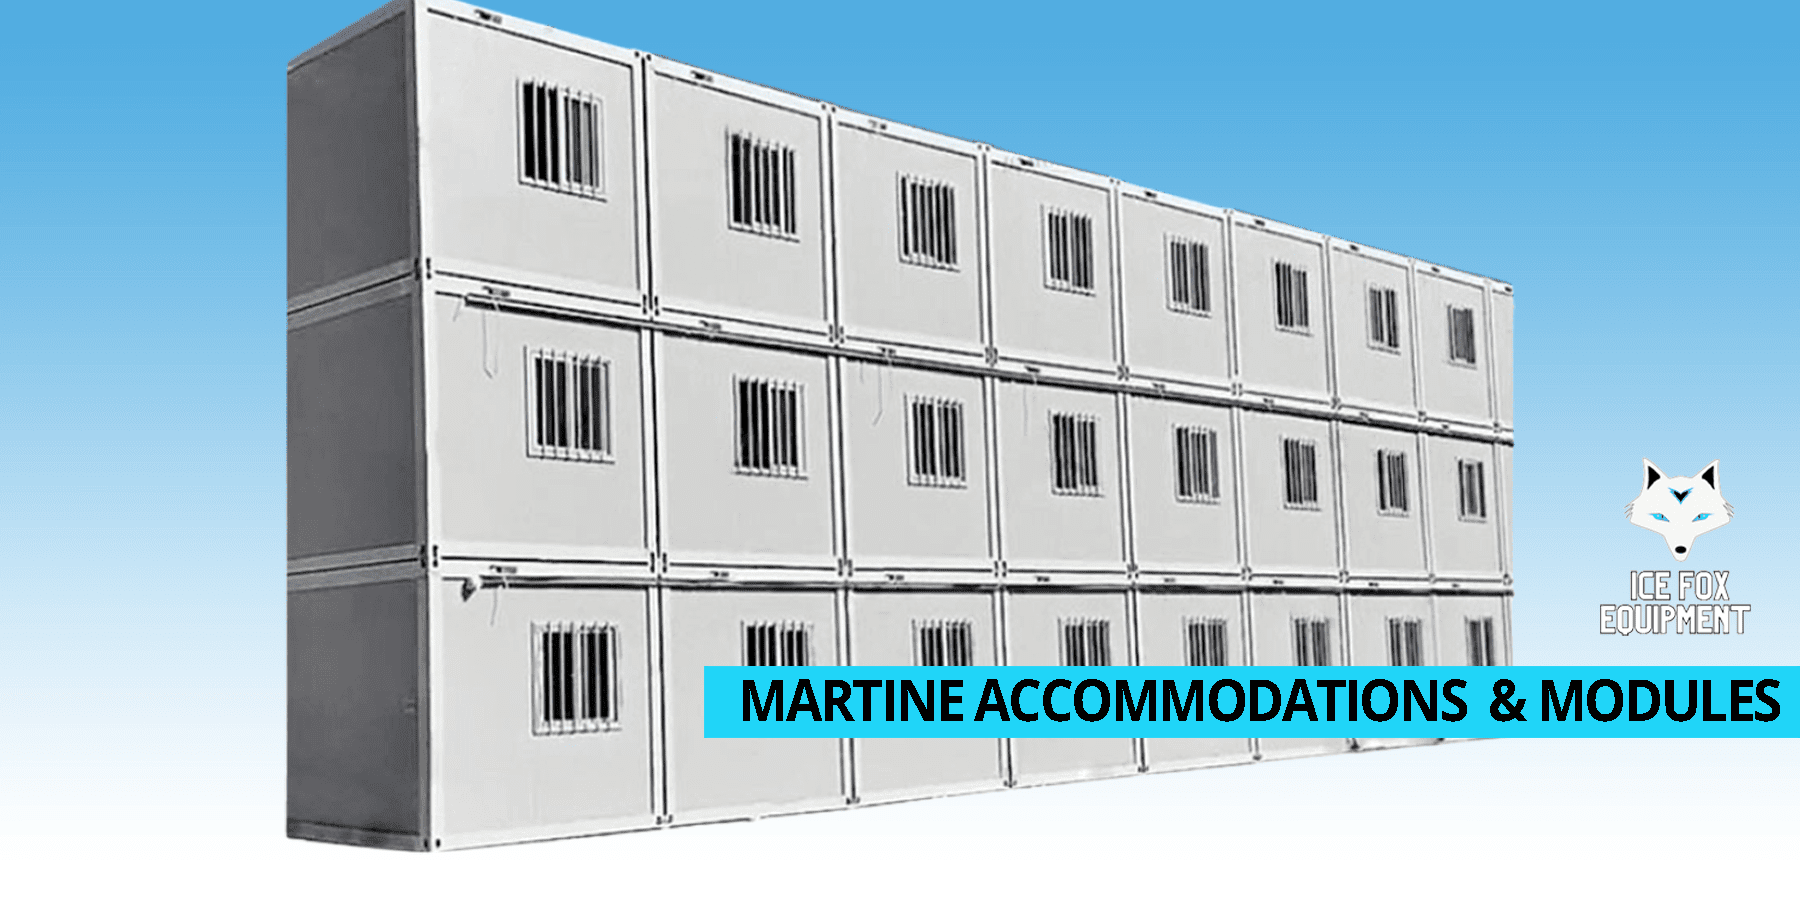 Martine accommodations & modules